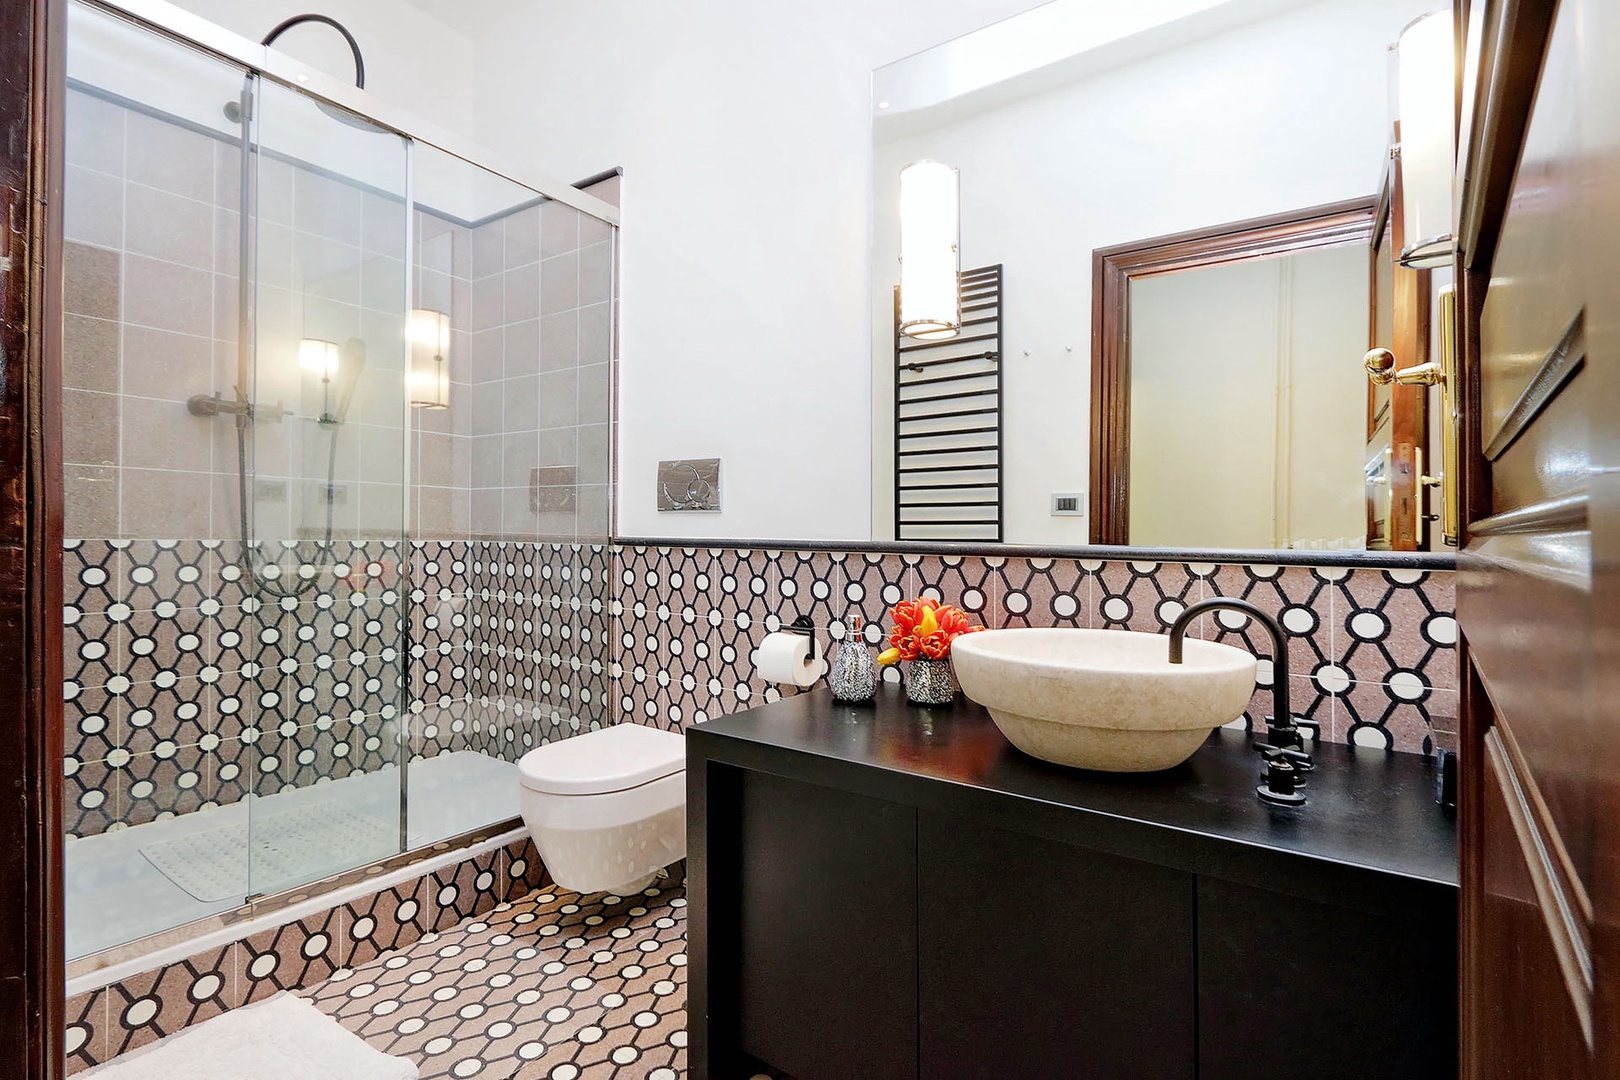 Clean, modern, bathroom 1...great tiles!